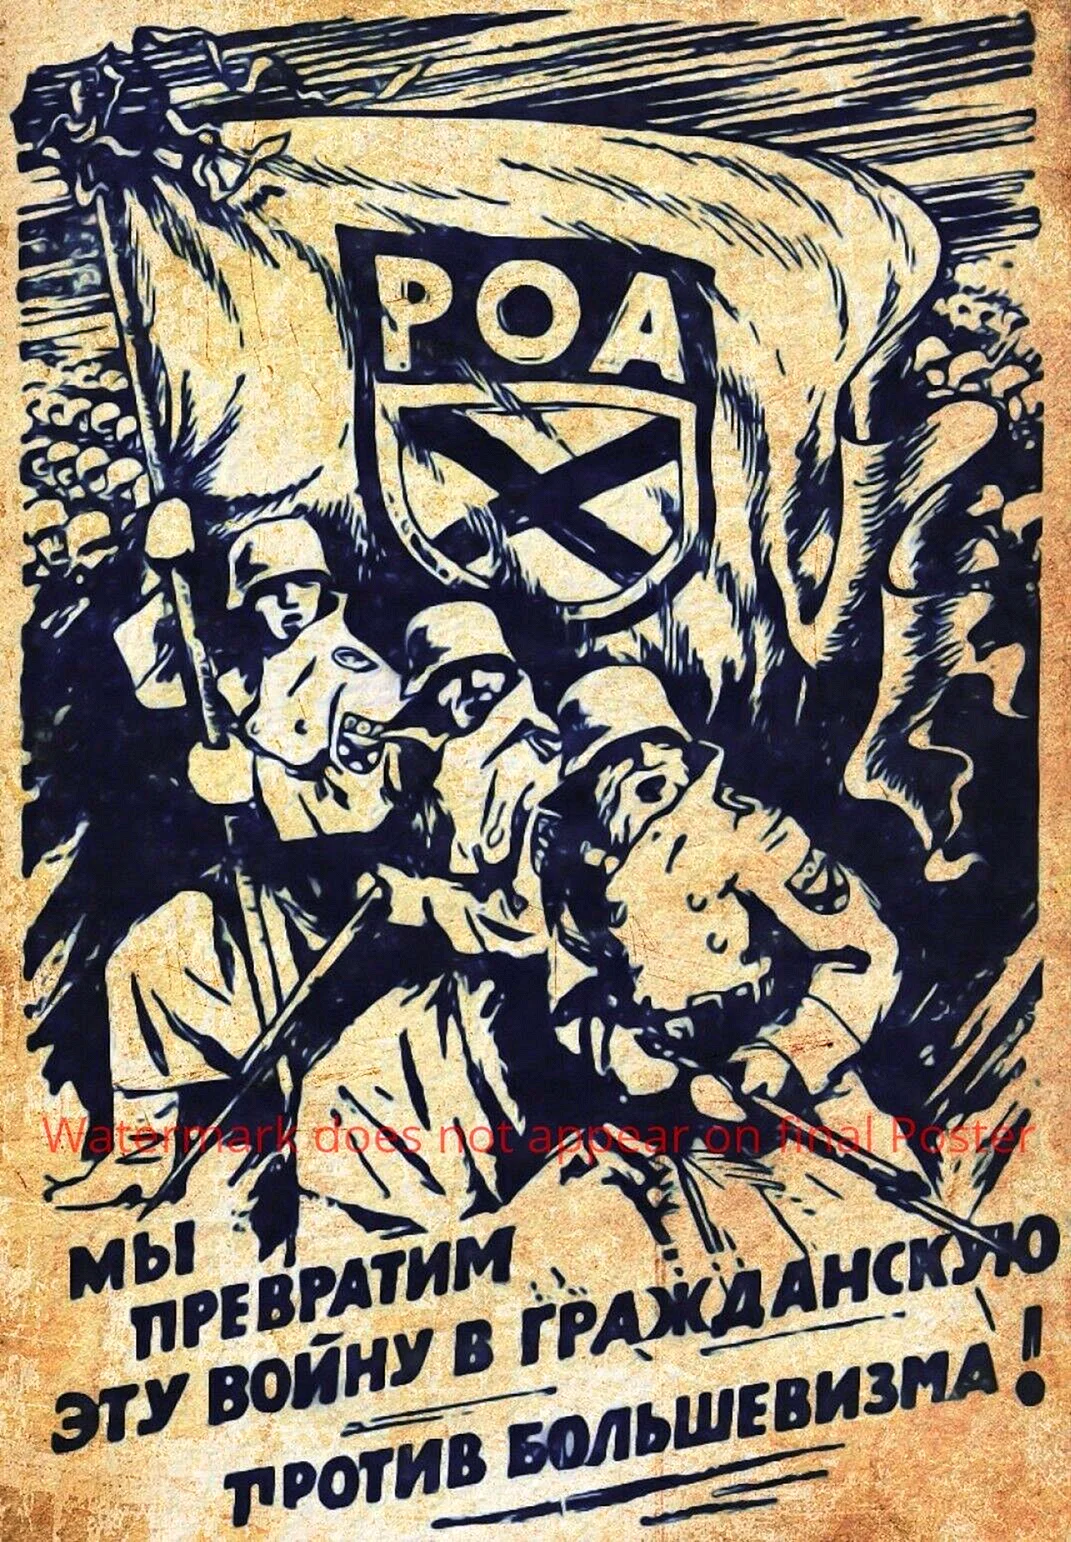 Антисоветские плакаты РОА